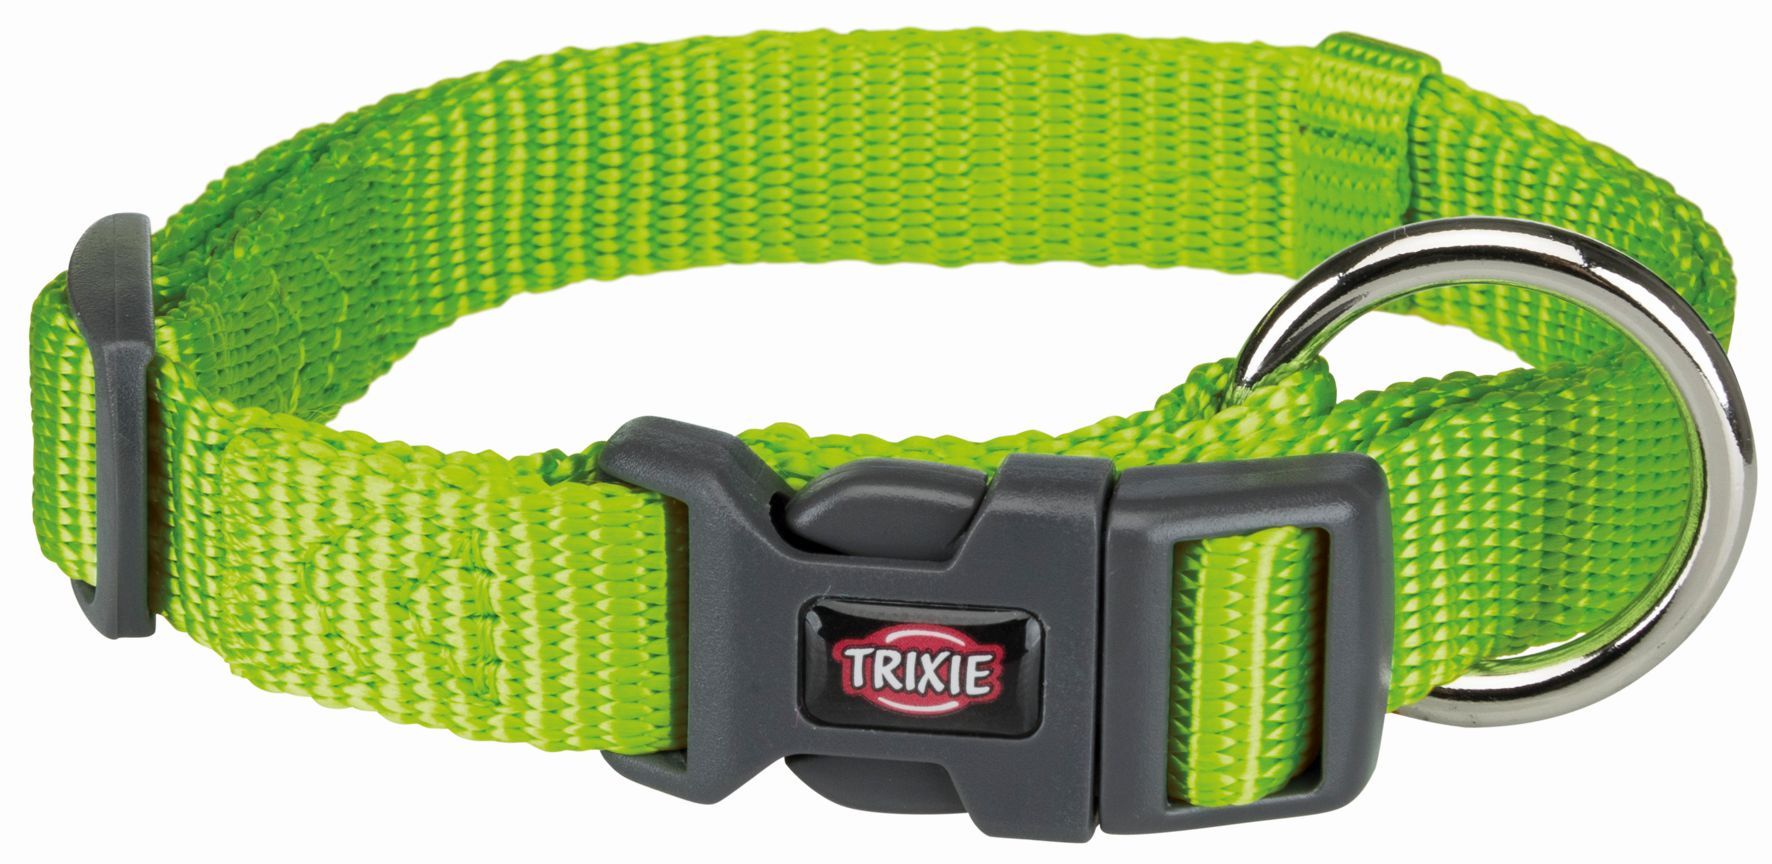 Trixie Ошейник для собак Premium, обхват шеи 35-55 см, ширина 2 см, яблочный